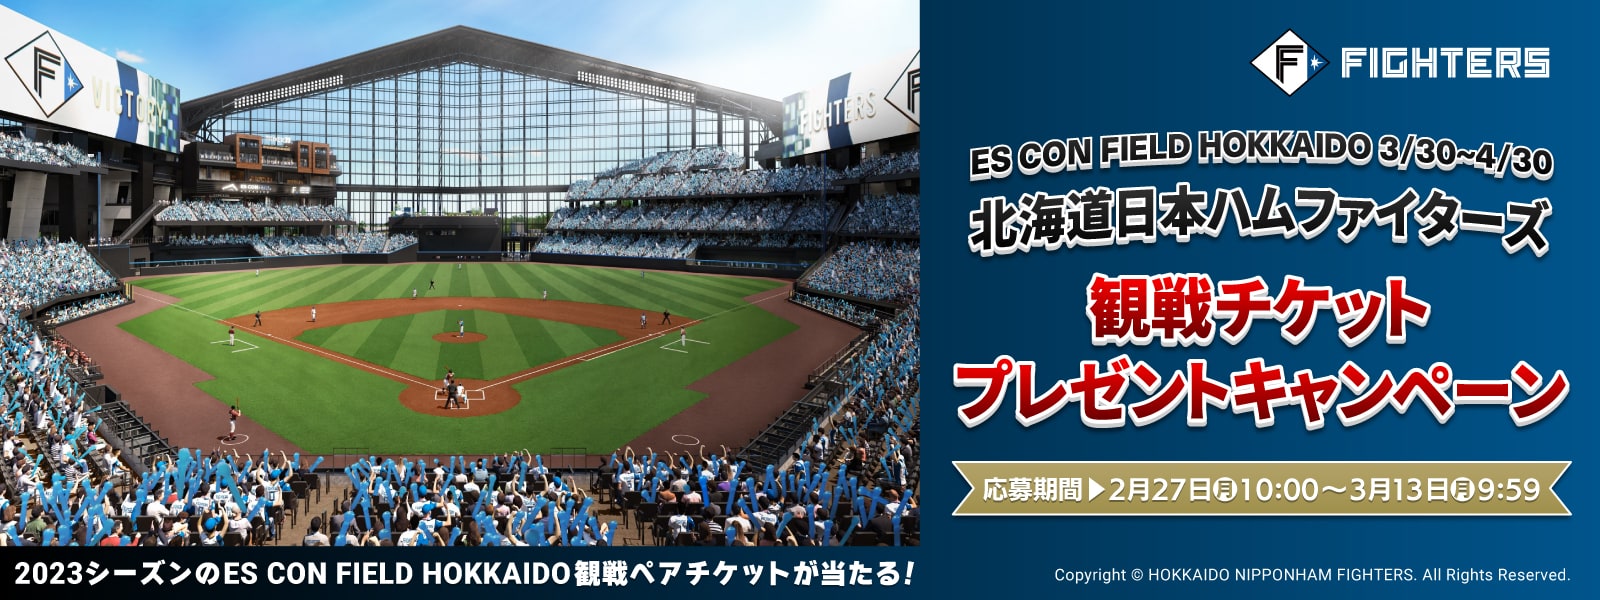 4月30日プロ野球公式戦【阪神VS広島】ペアチケット